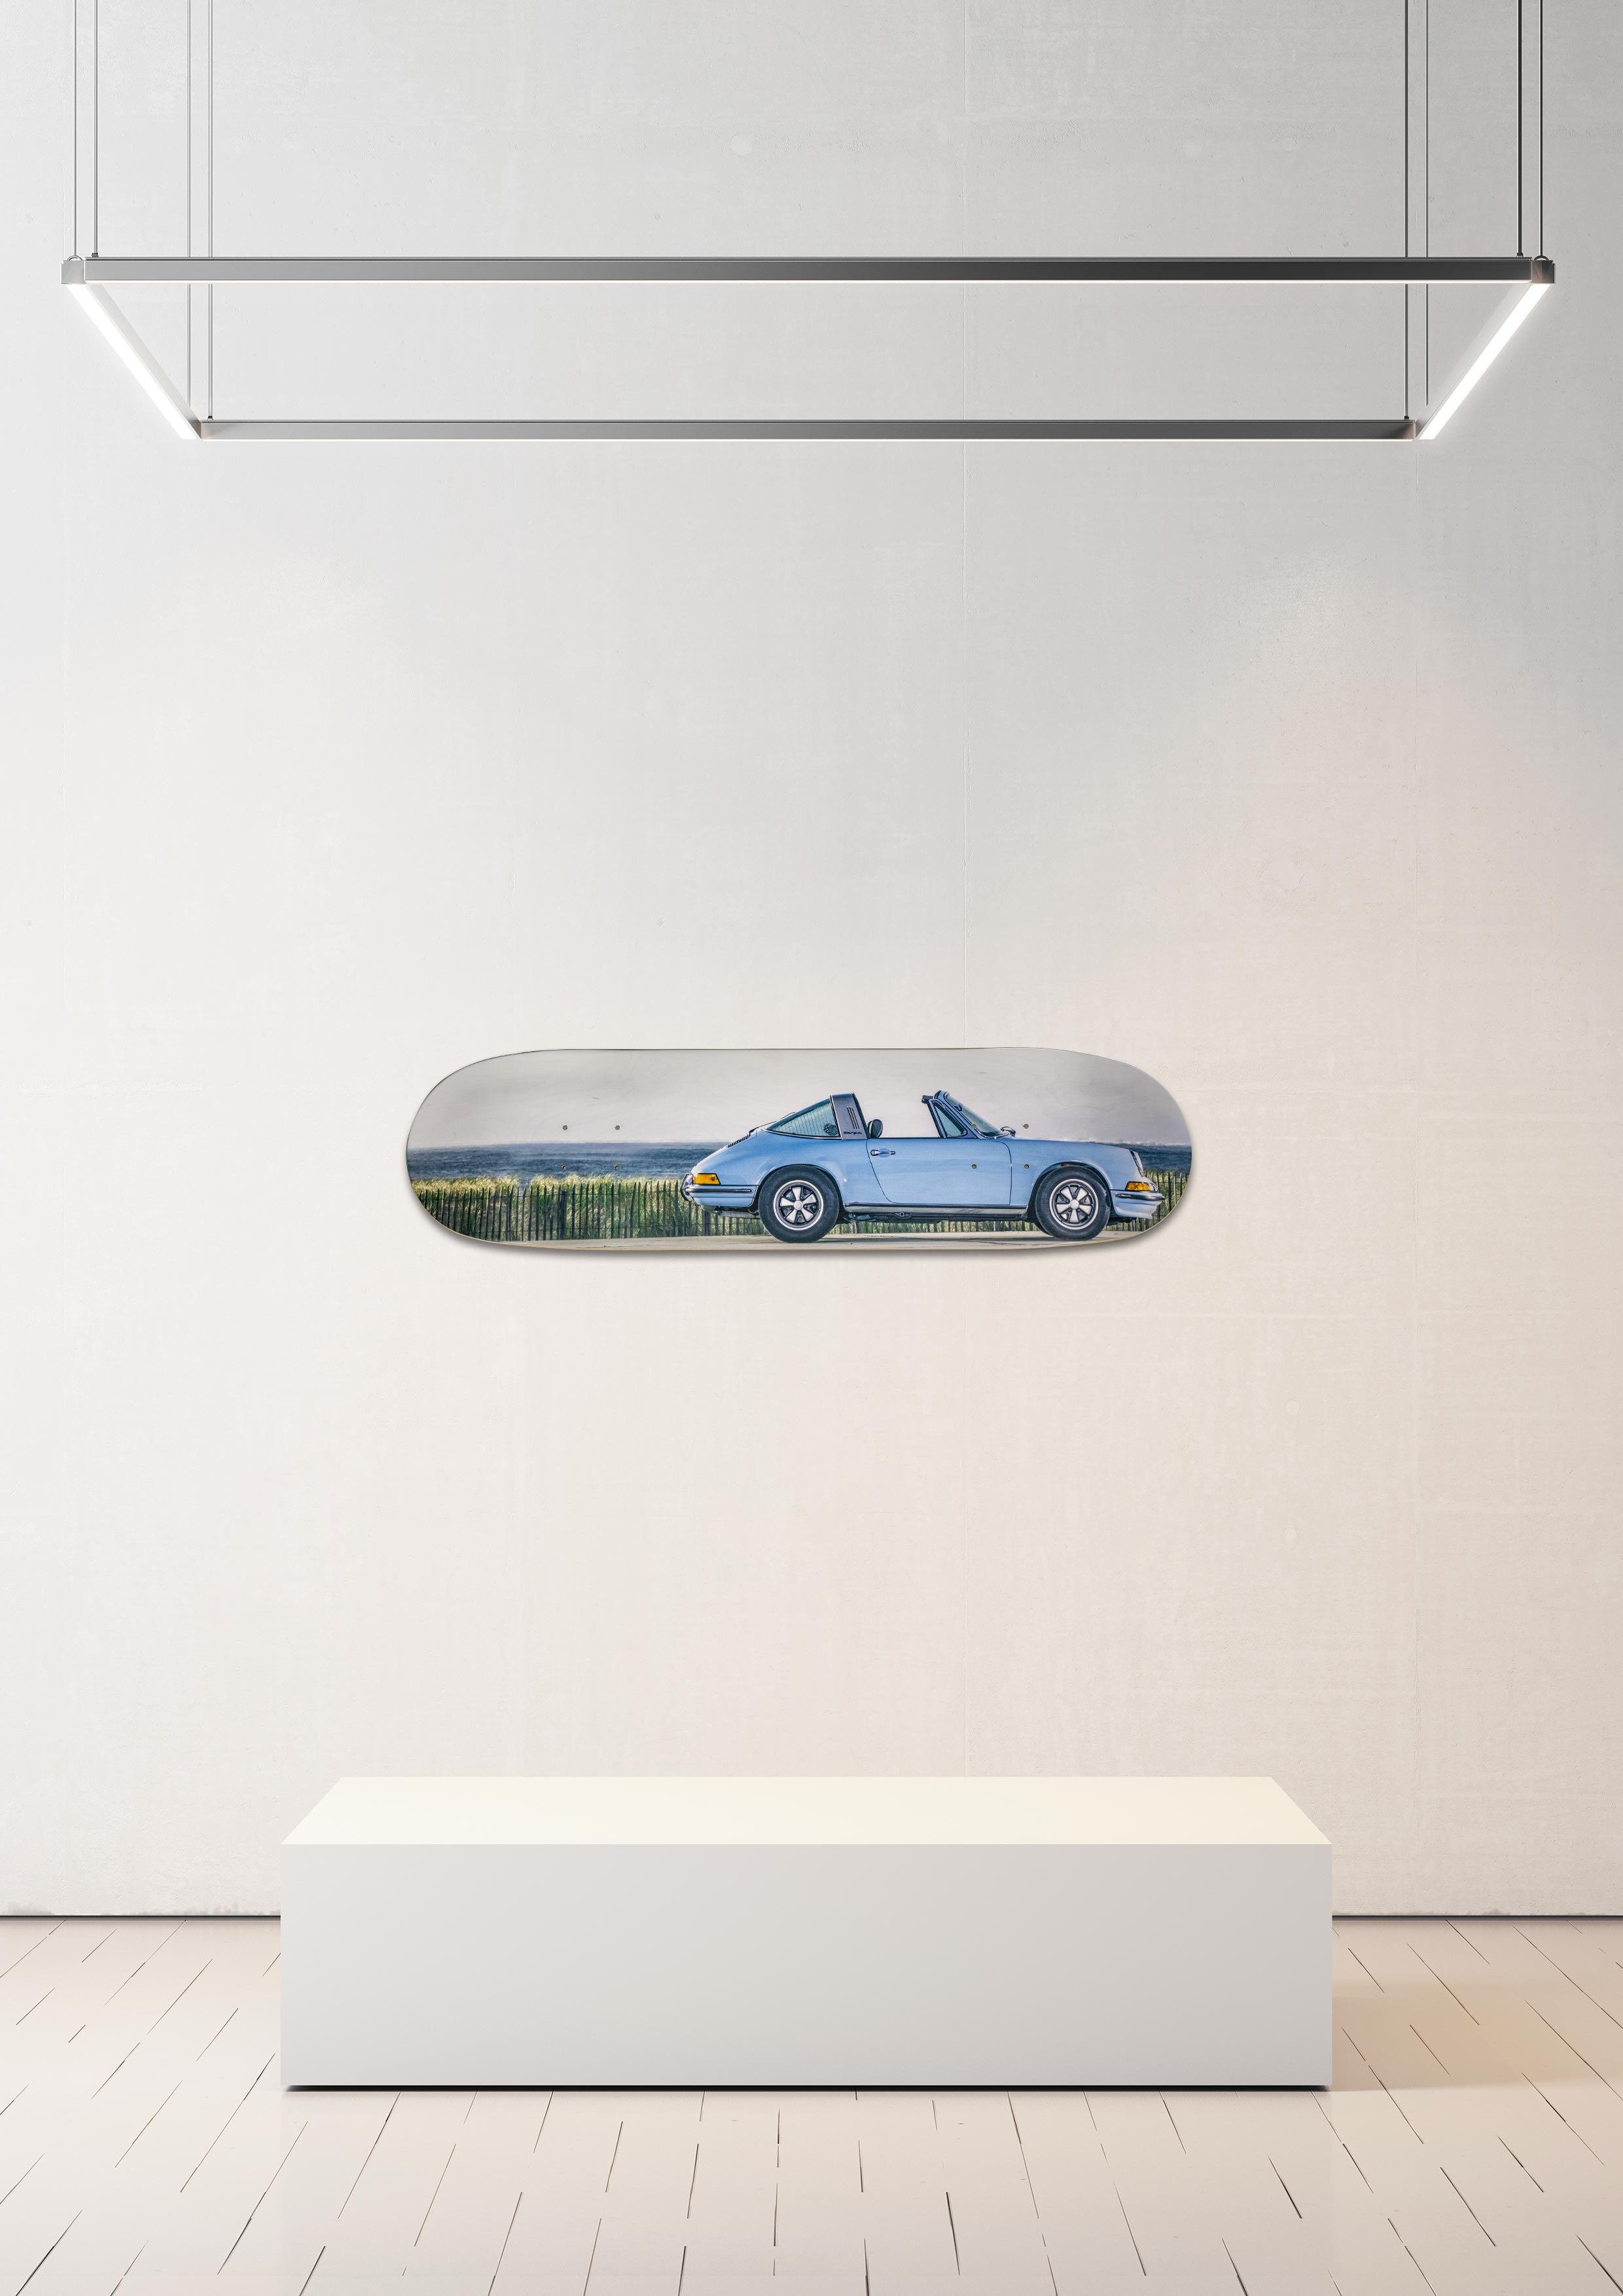 Planche de skate murale - édition très limitée Porsche 911 Targa 2,4 S bleu gulf - Serge Heitz